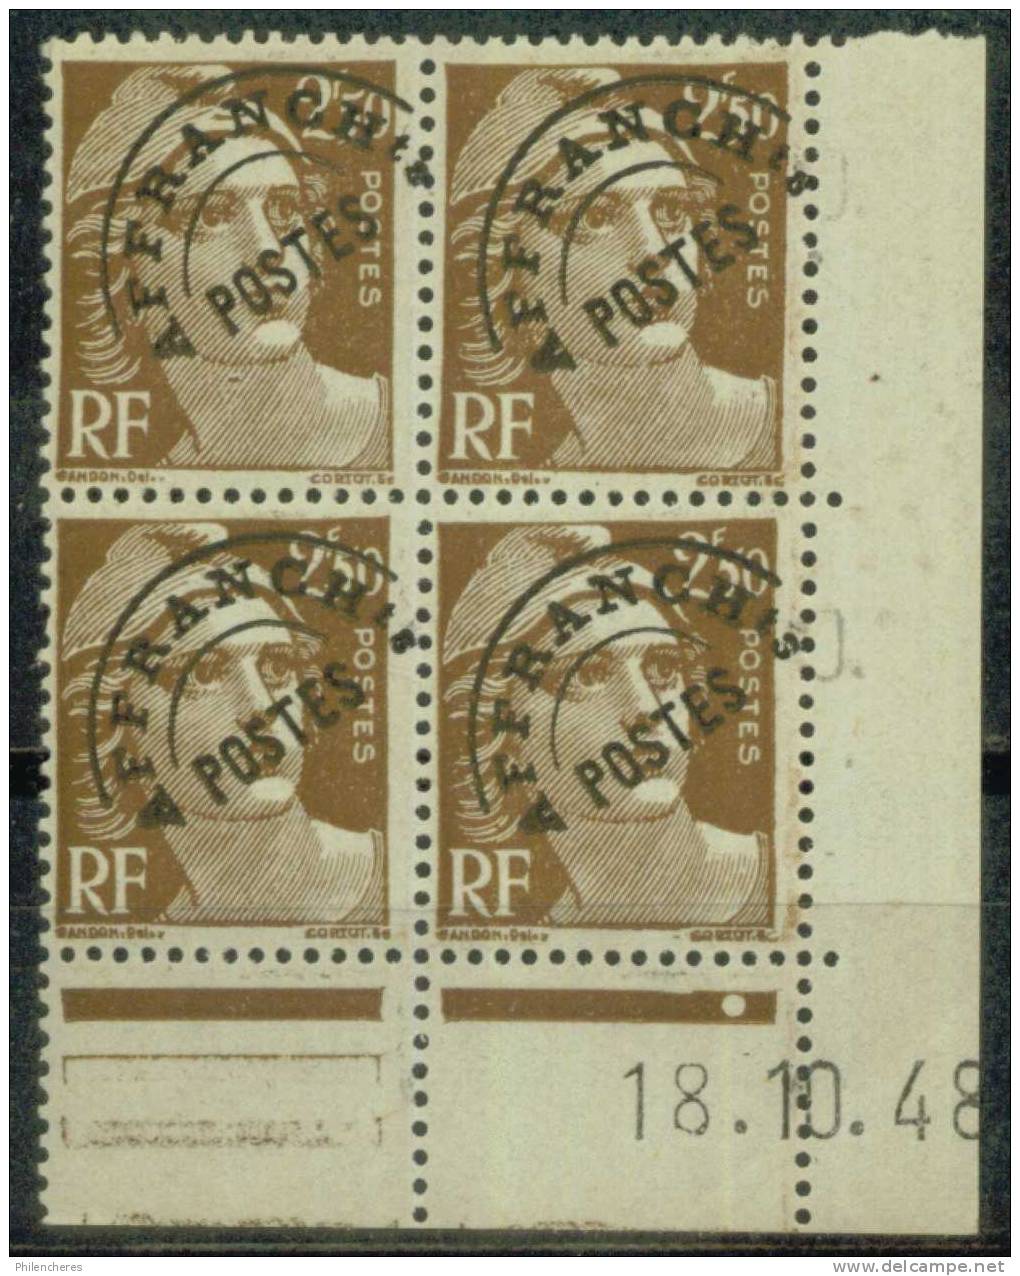 France Bloc De 4 - Coin Daté 1948 - Yvert Préoblitéré N° 95 Xx - Cote 15 Euros - Prix De Départ 4,5 Euros - Voorafgestempeld